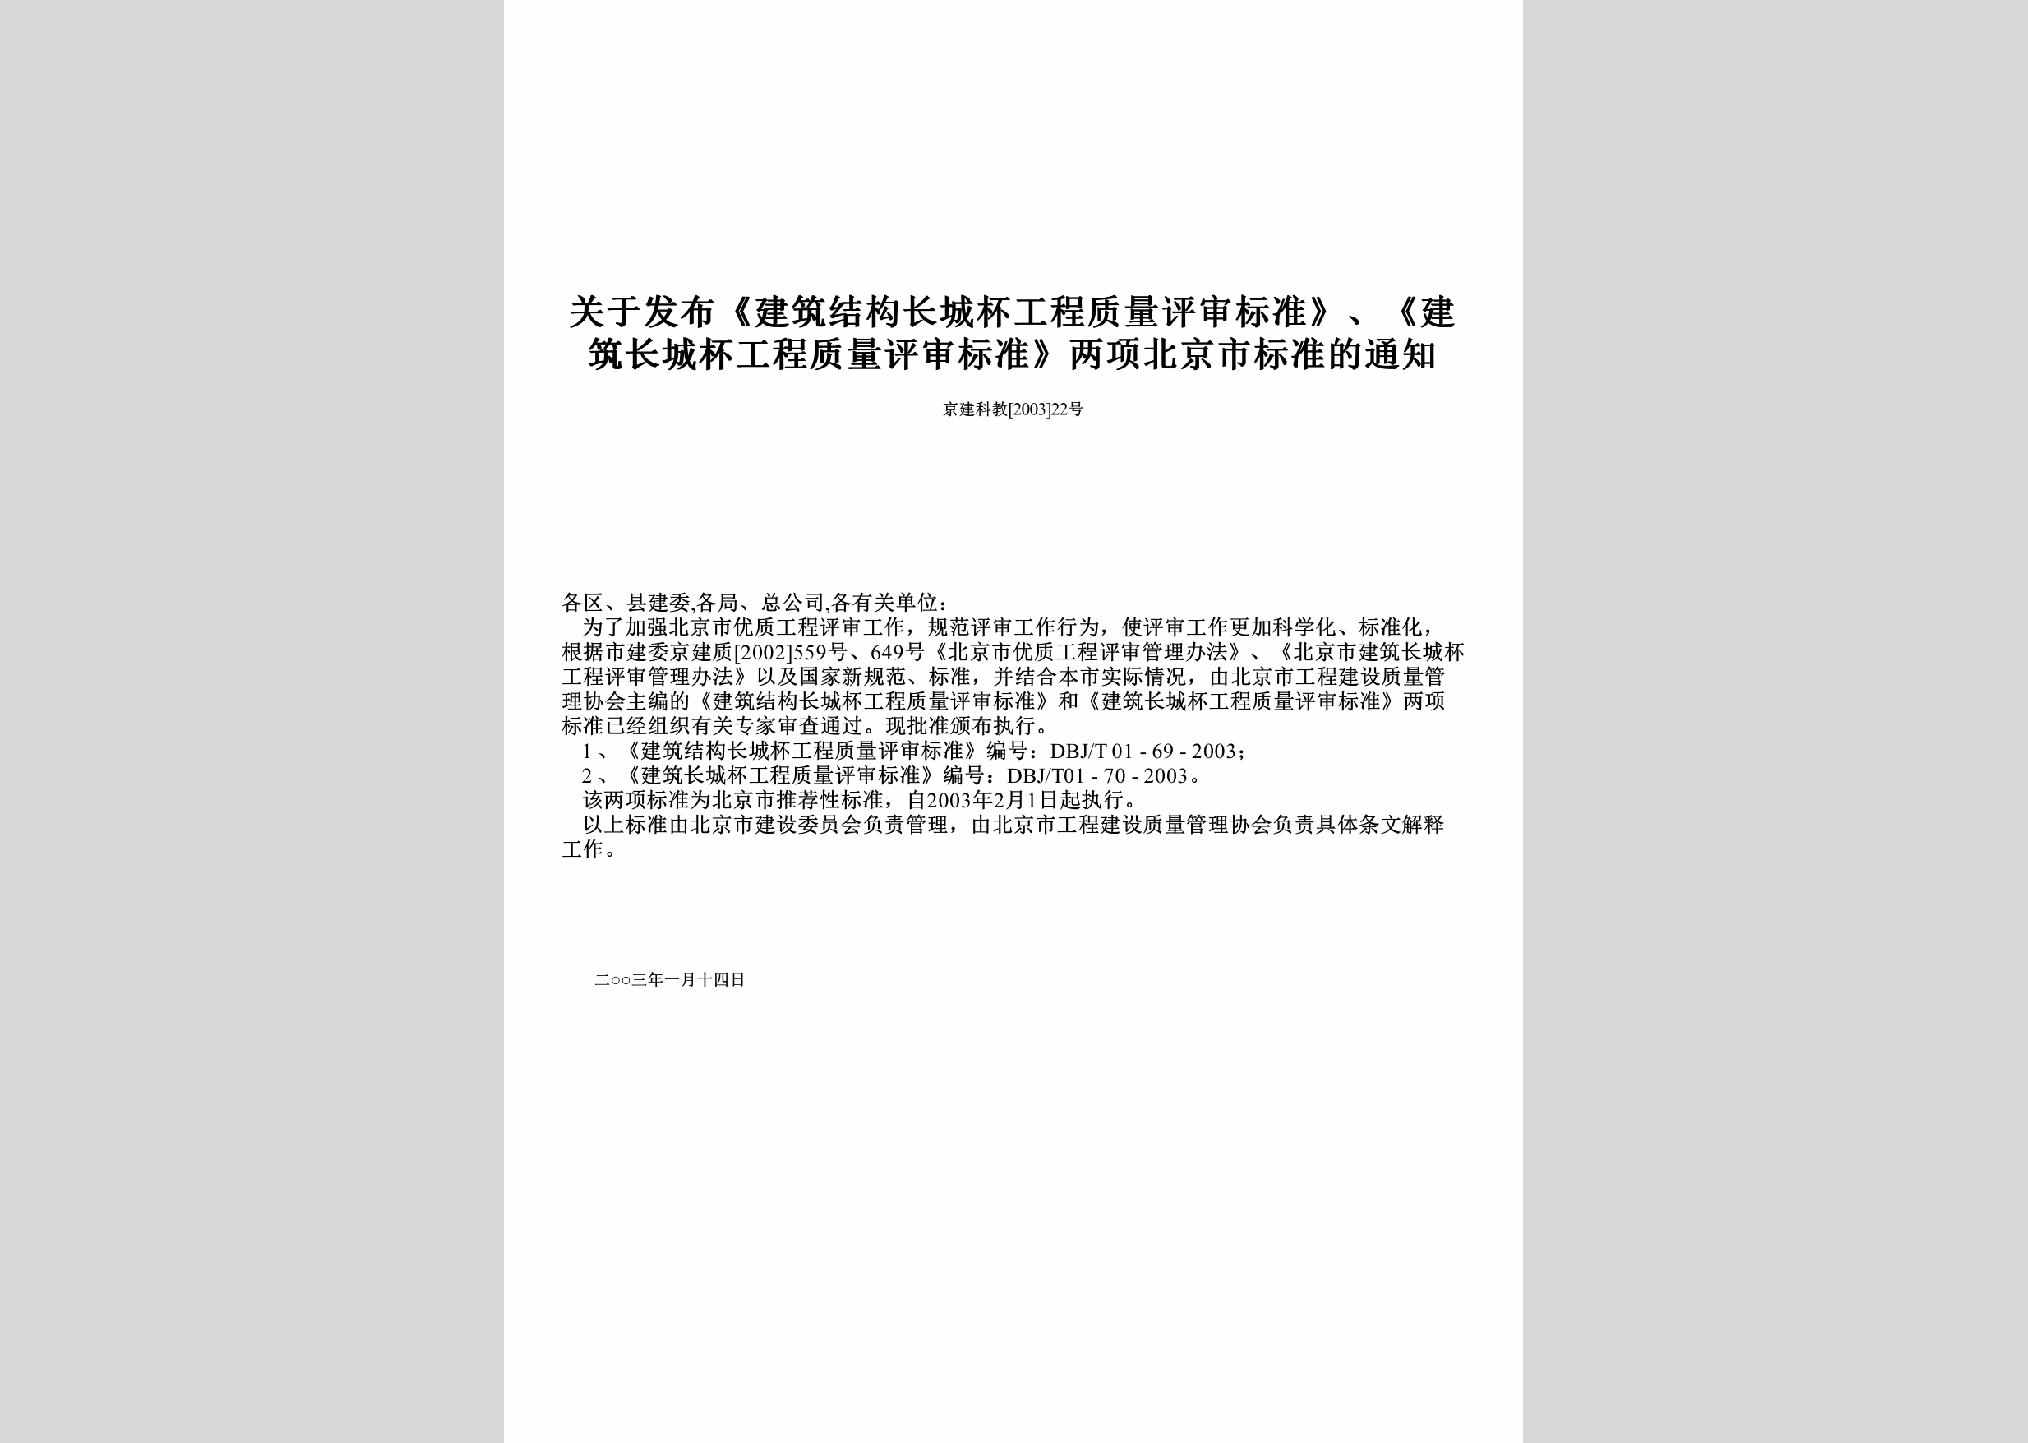 京建科教[2003]22号：关于发布《建筑结构长城杯工程质量评审标准》、《建筑长城杯工程质量评审标准》两项北京市标准的通知